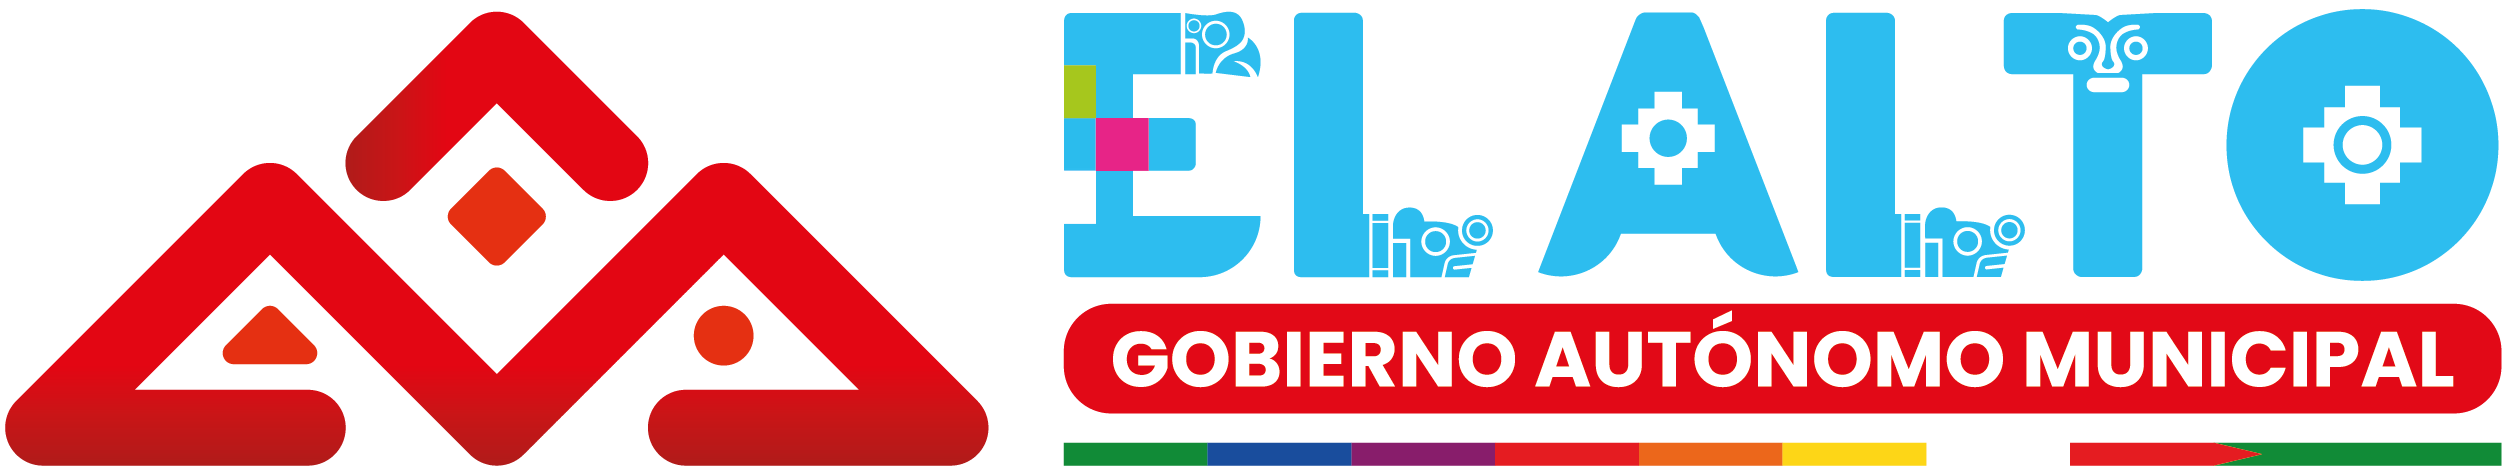 Logo GAMEA